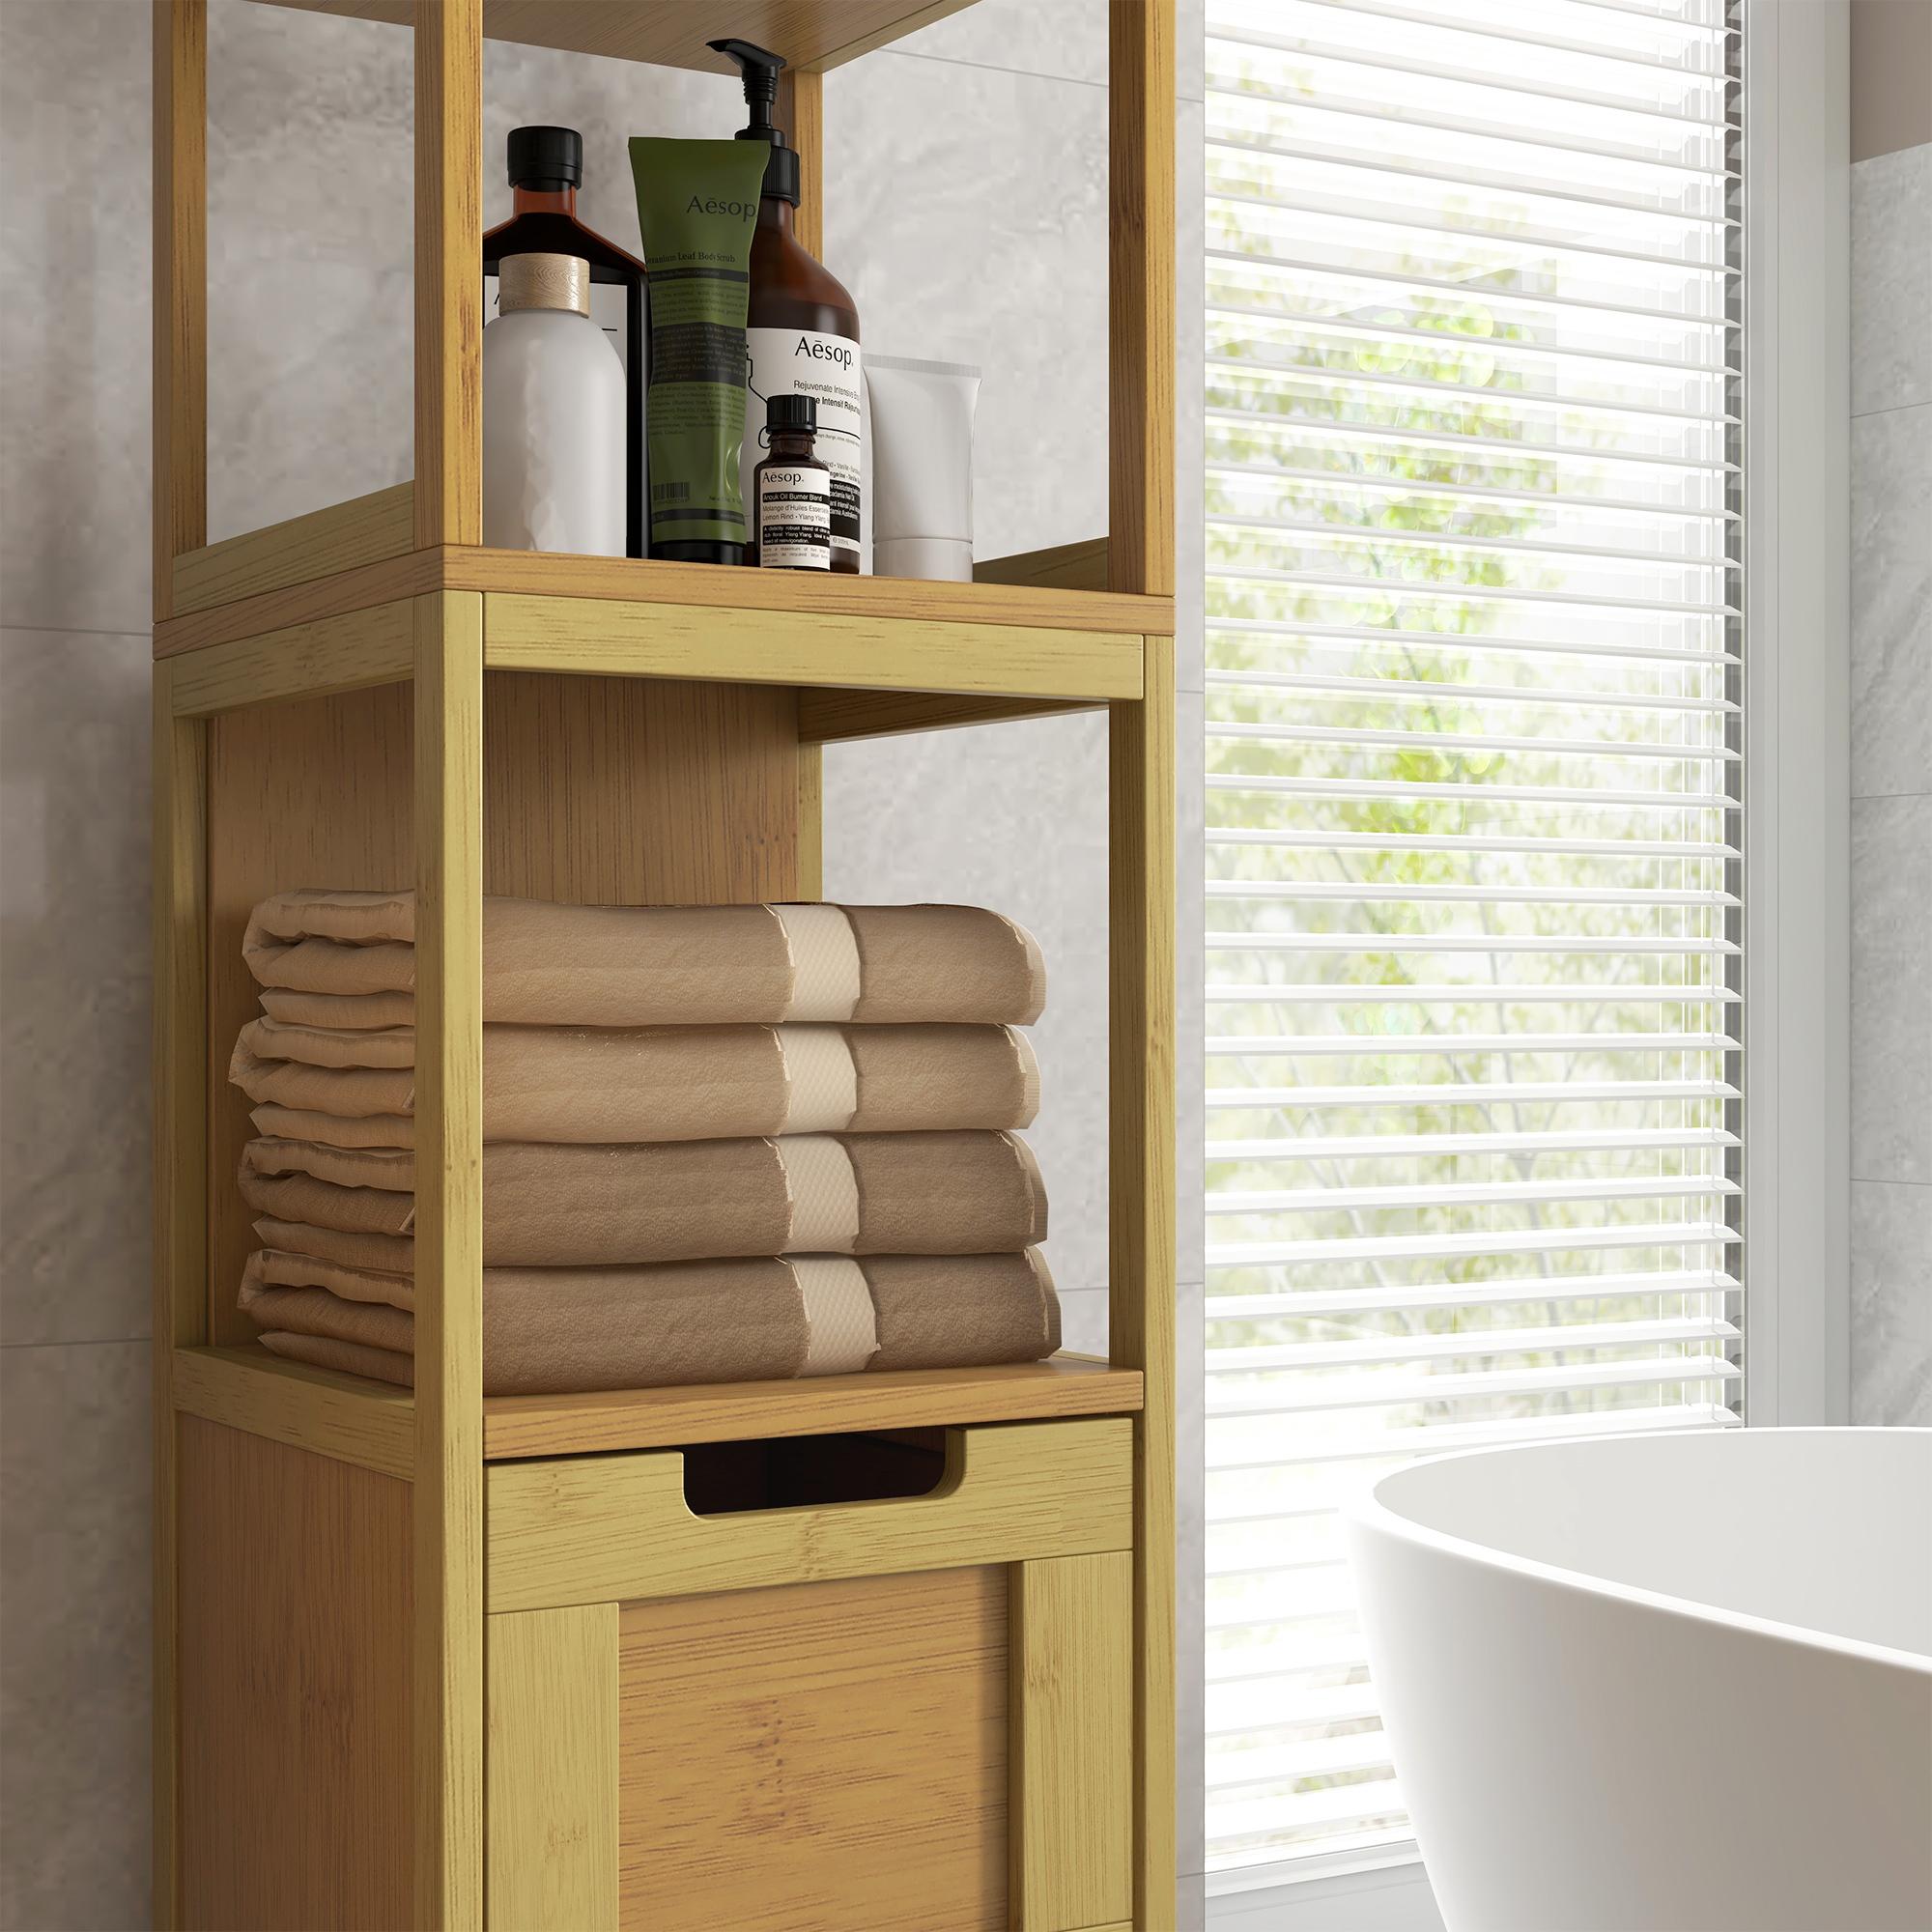 Meuble colonne rangement salle de bain style cosy dim. 30L x 30l x 144H cm 3 étagères 2 tiroirs bambou MDF aspect bois clair